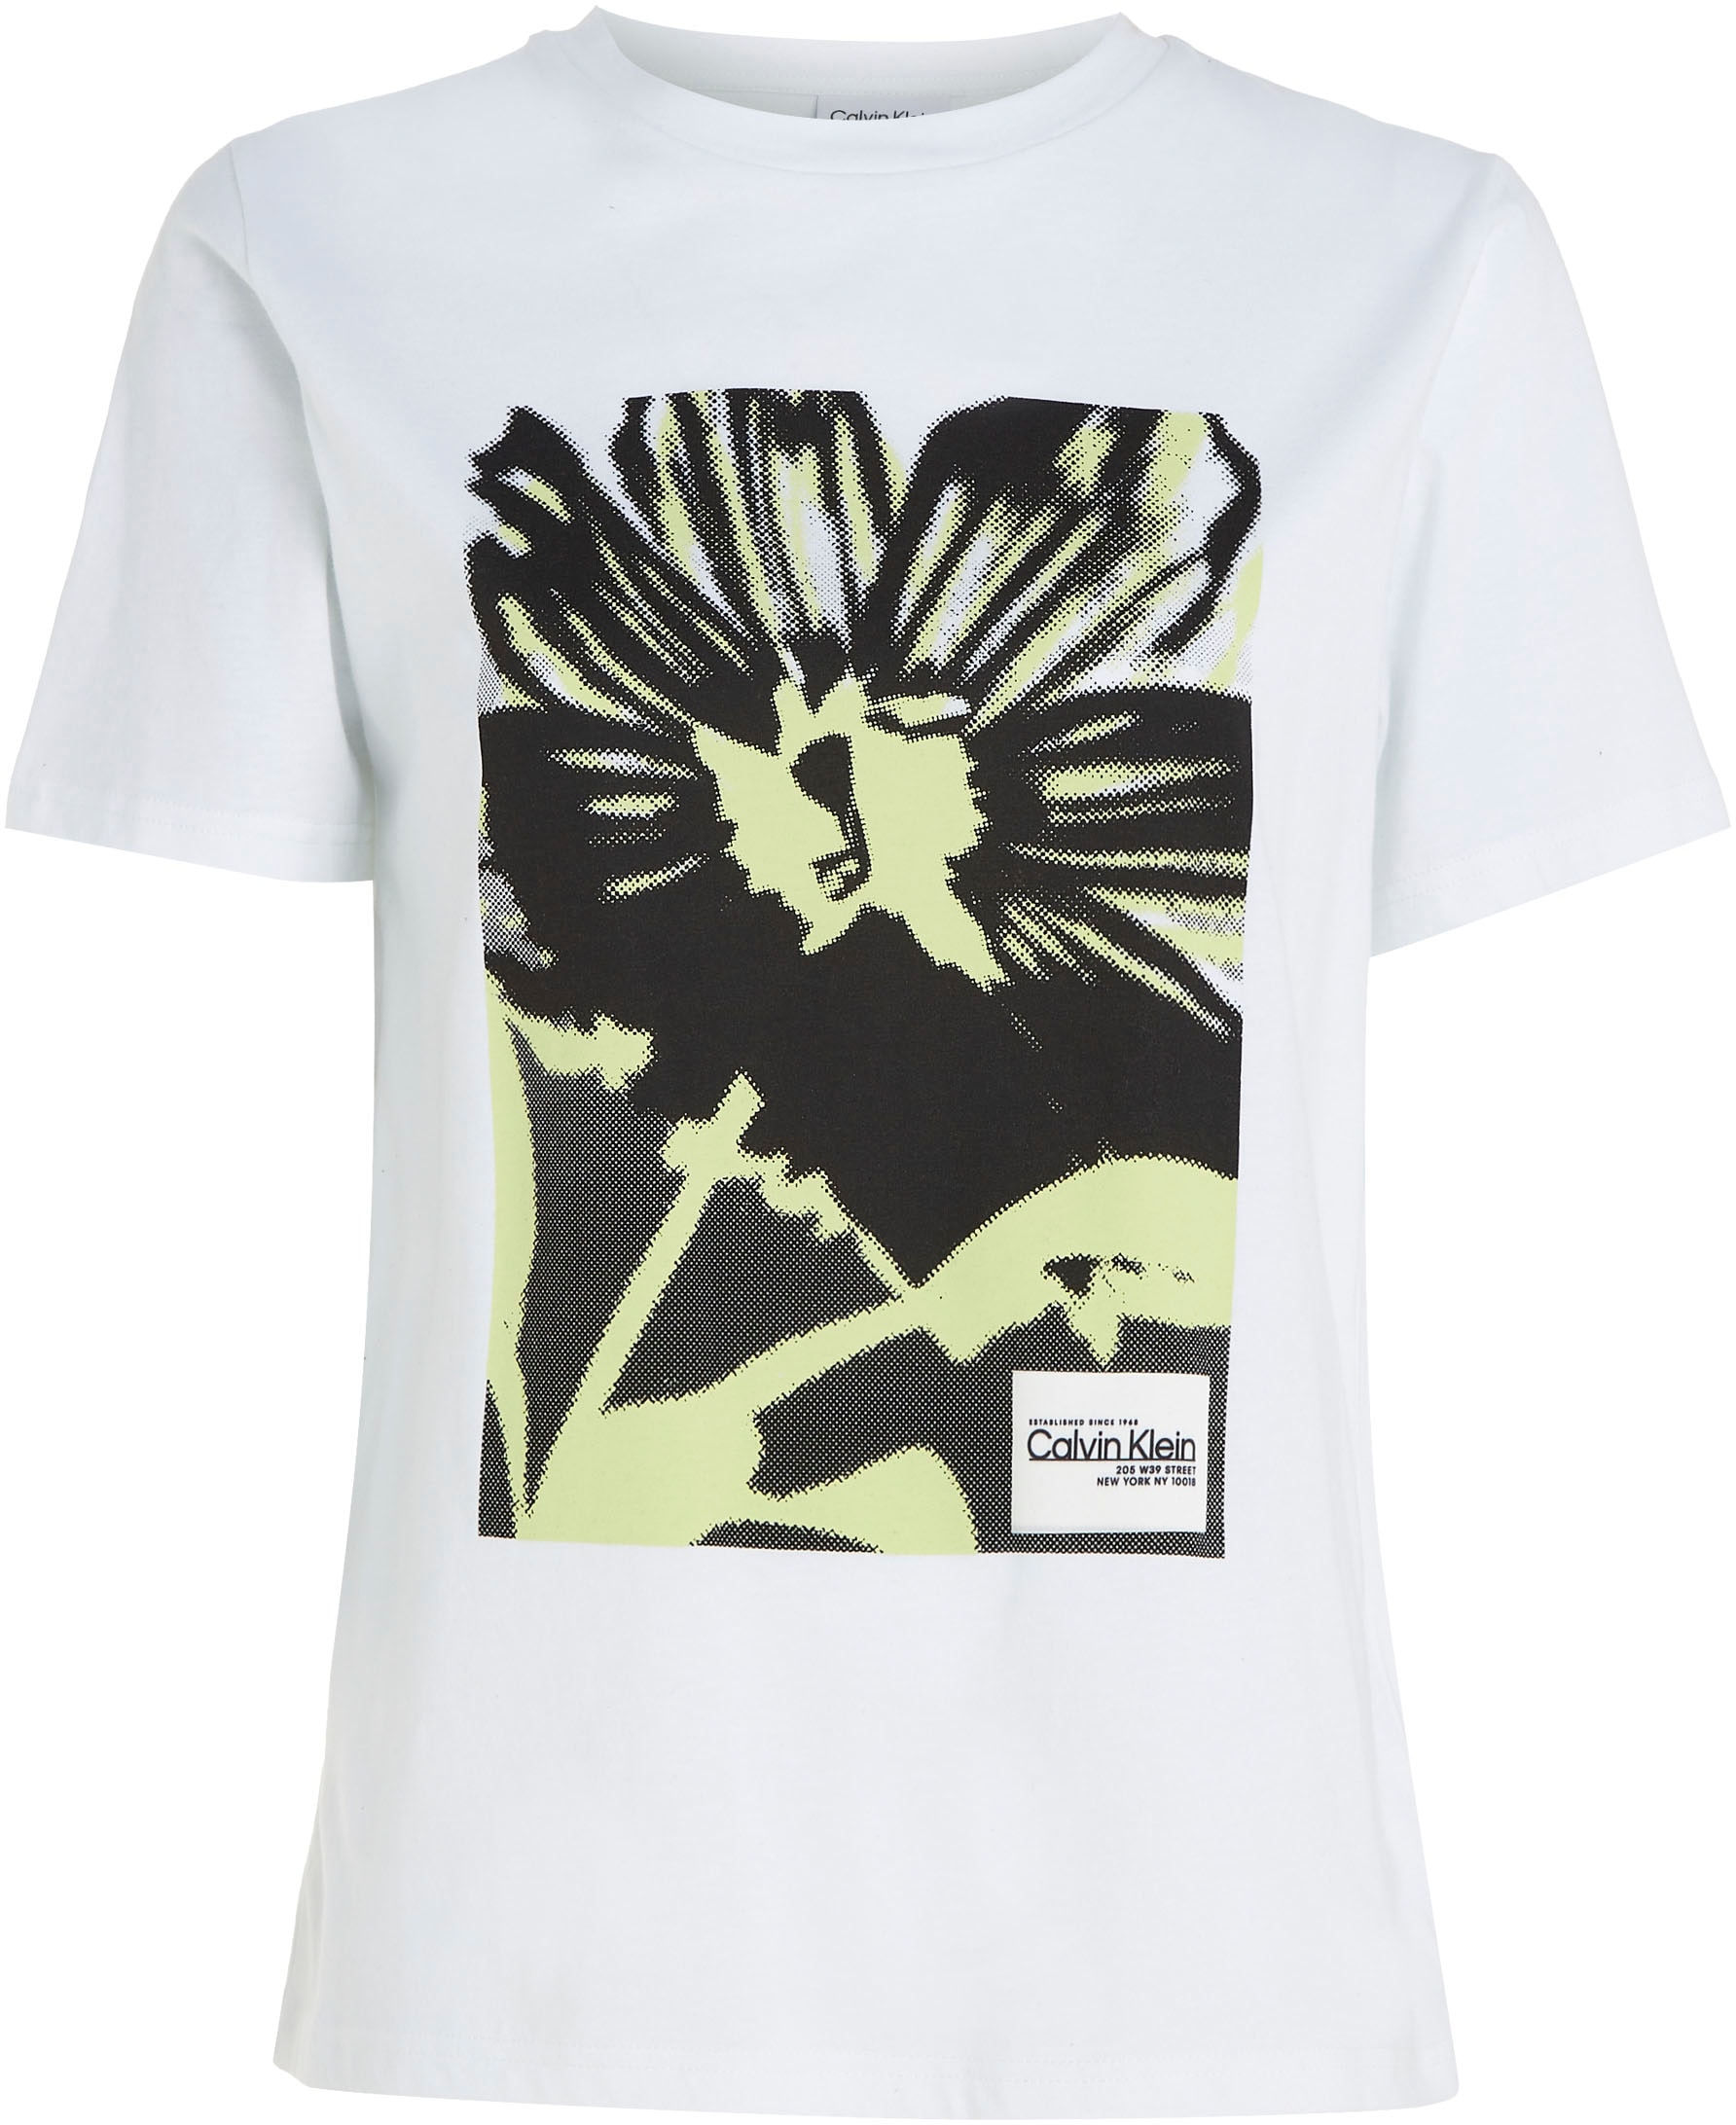 Floral-Printmuster mit Klein kaufen | online Calvin UNIVERSAL T-Shirt,